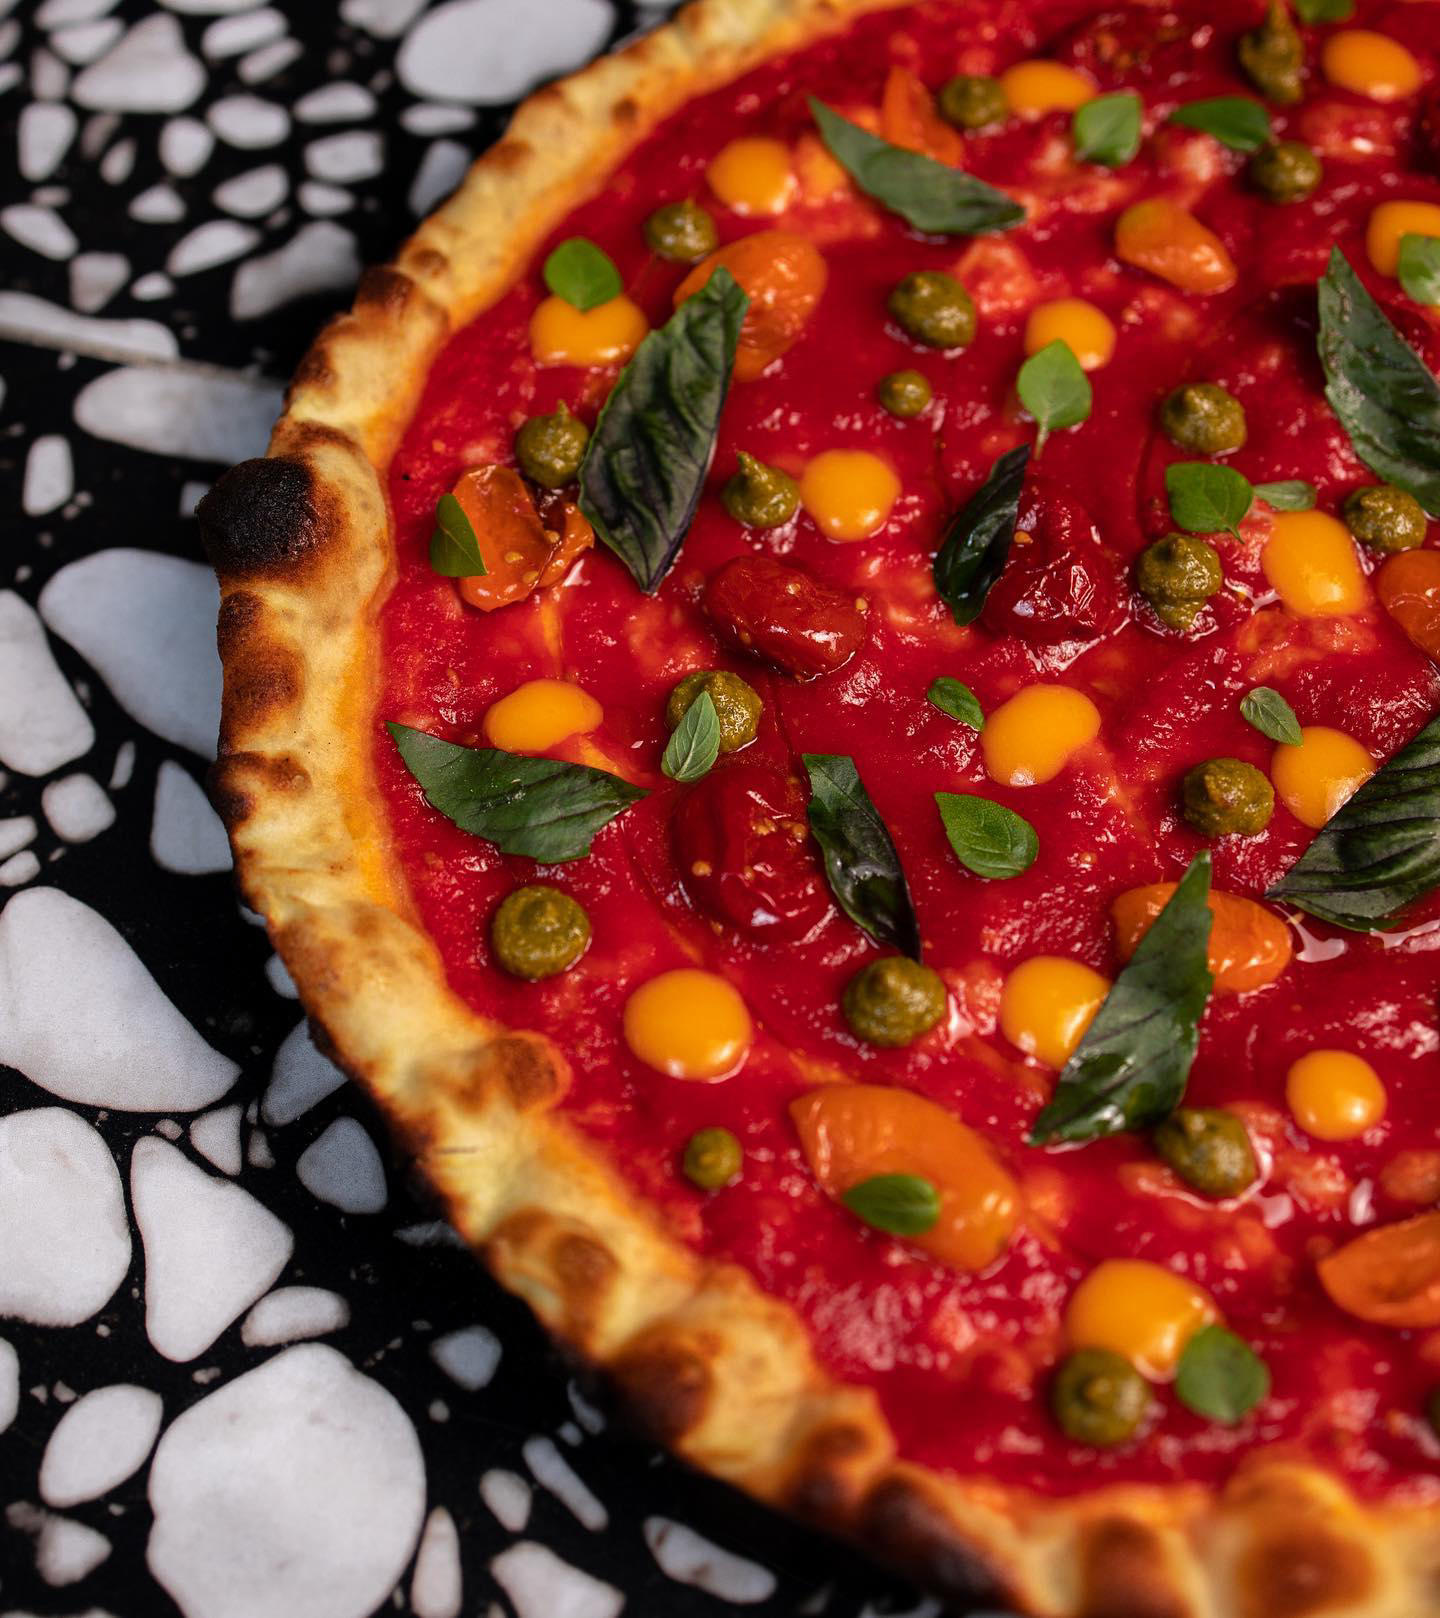 180grammiPizzeriaRomana - Una pizza che ogni anno ha avuto una sua evoluzione “Pomodoro e basilico”